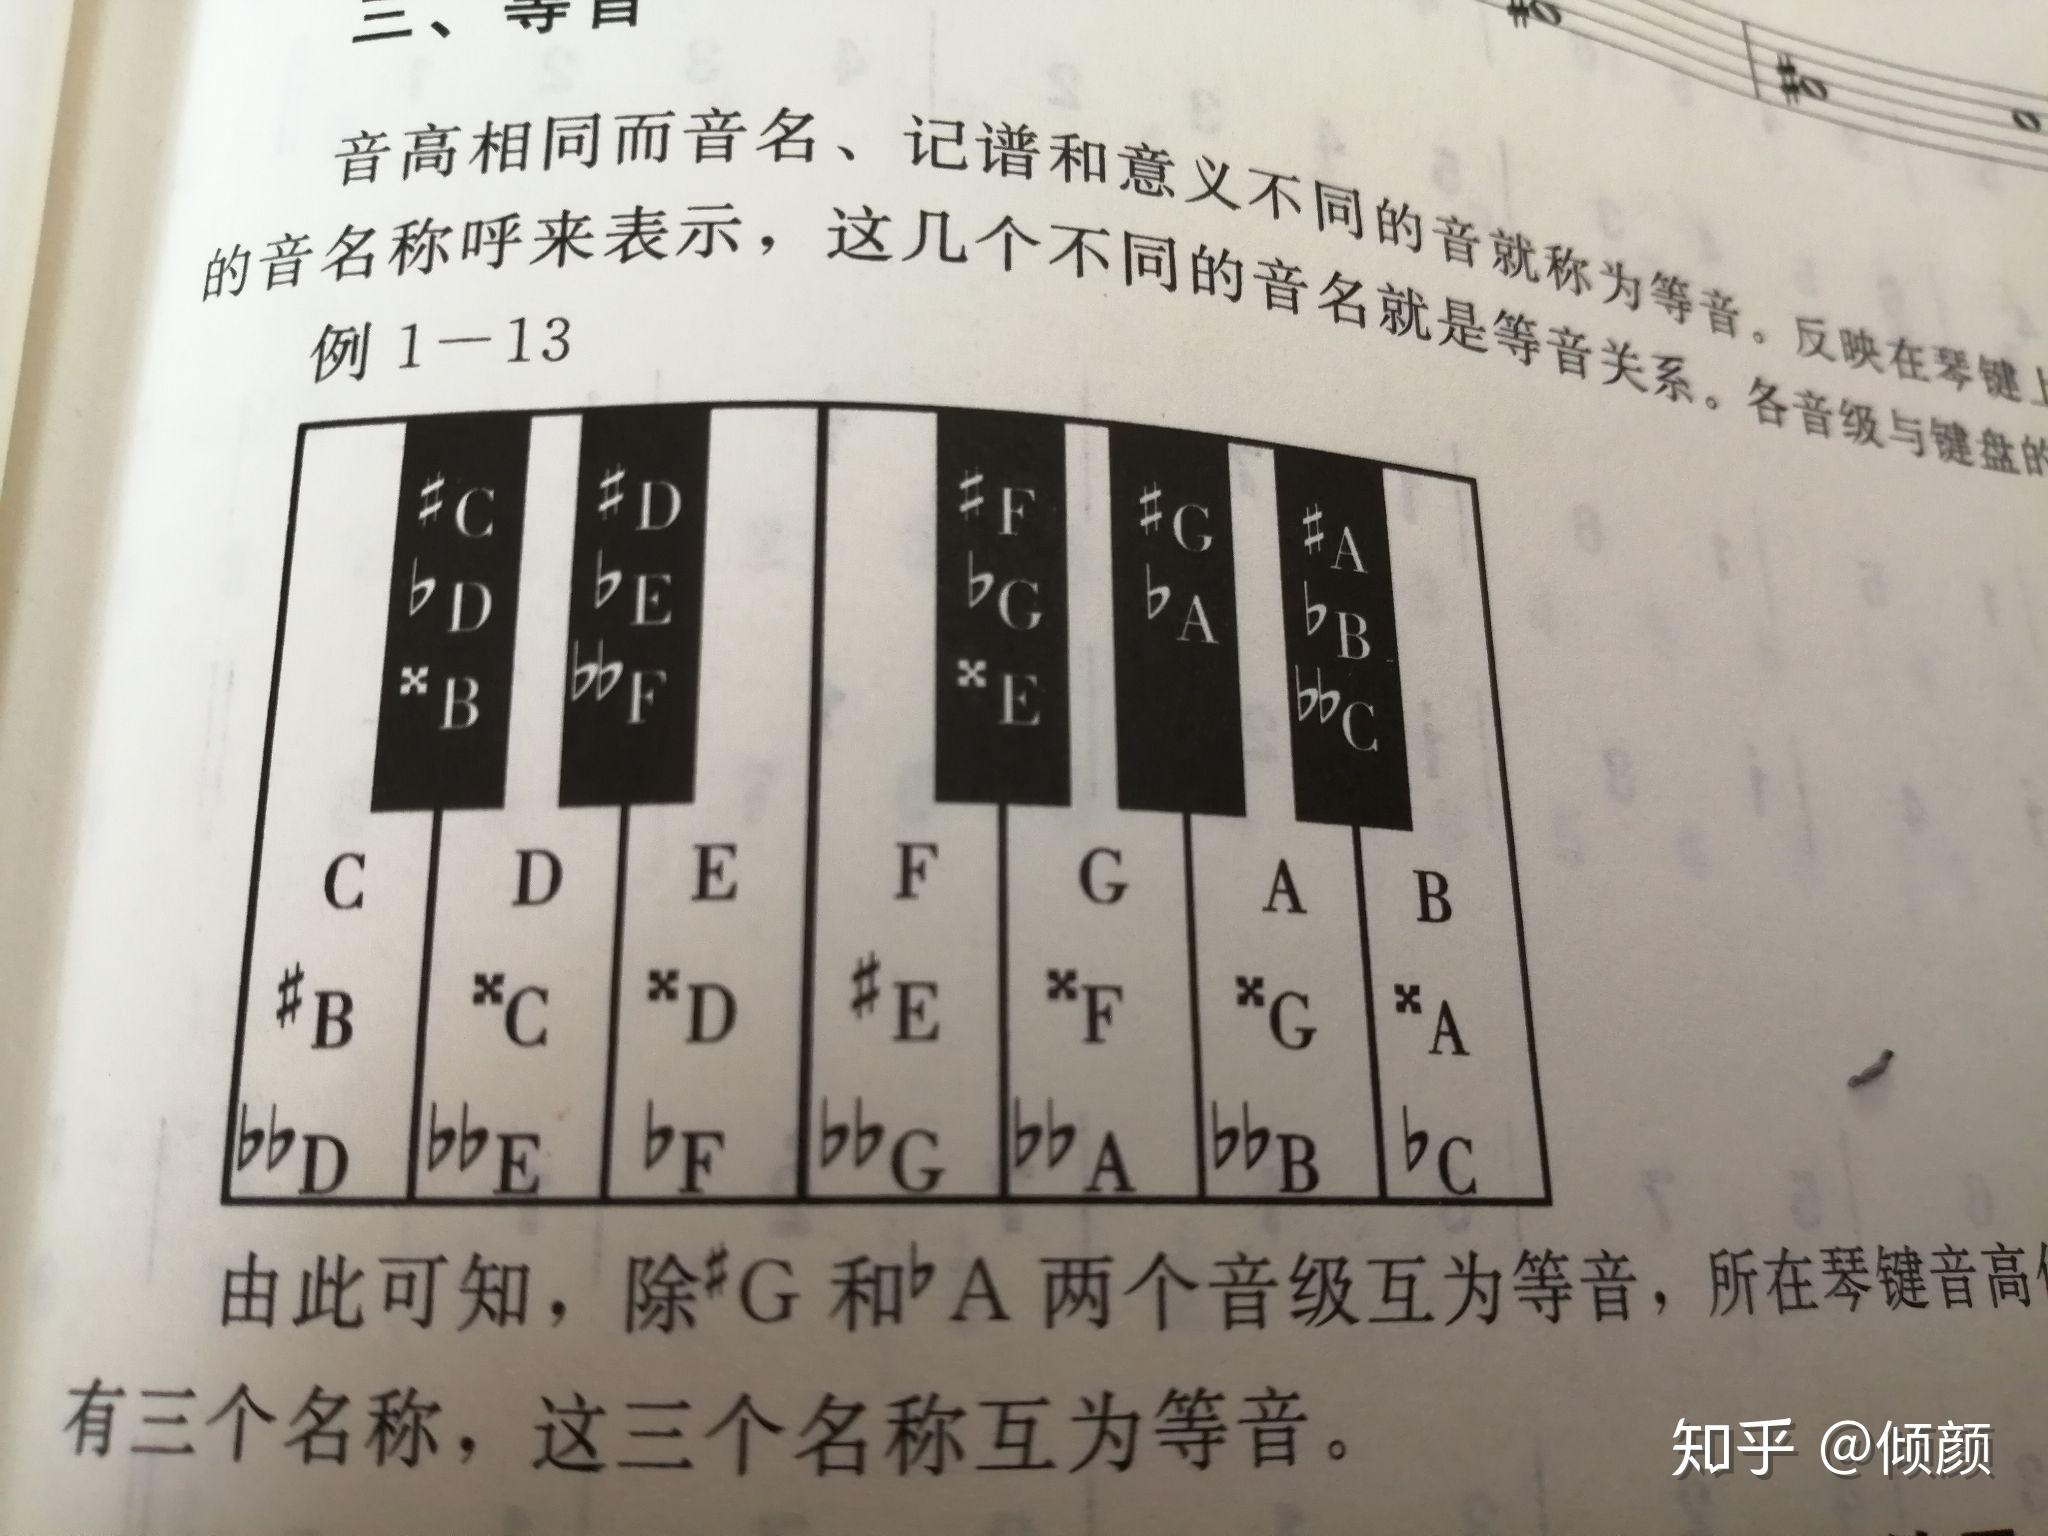 61键电子琴黑键位图图片